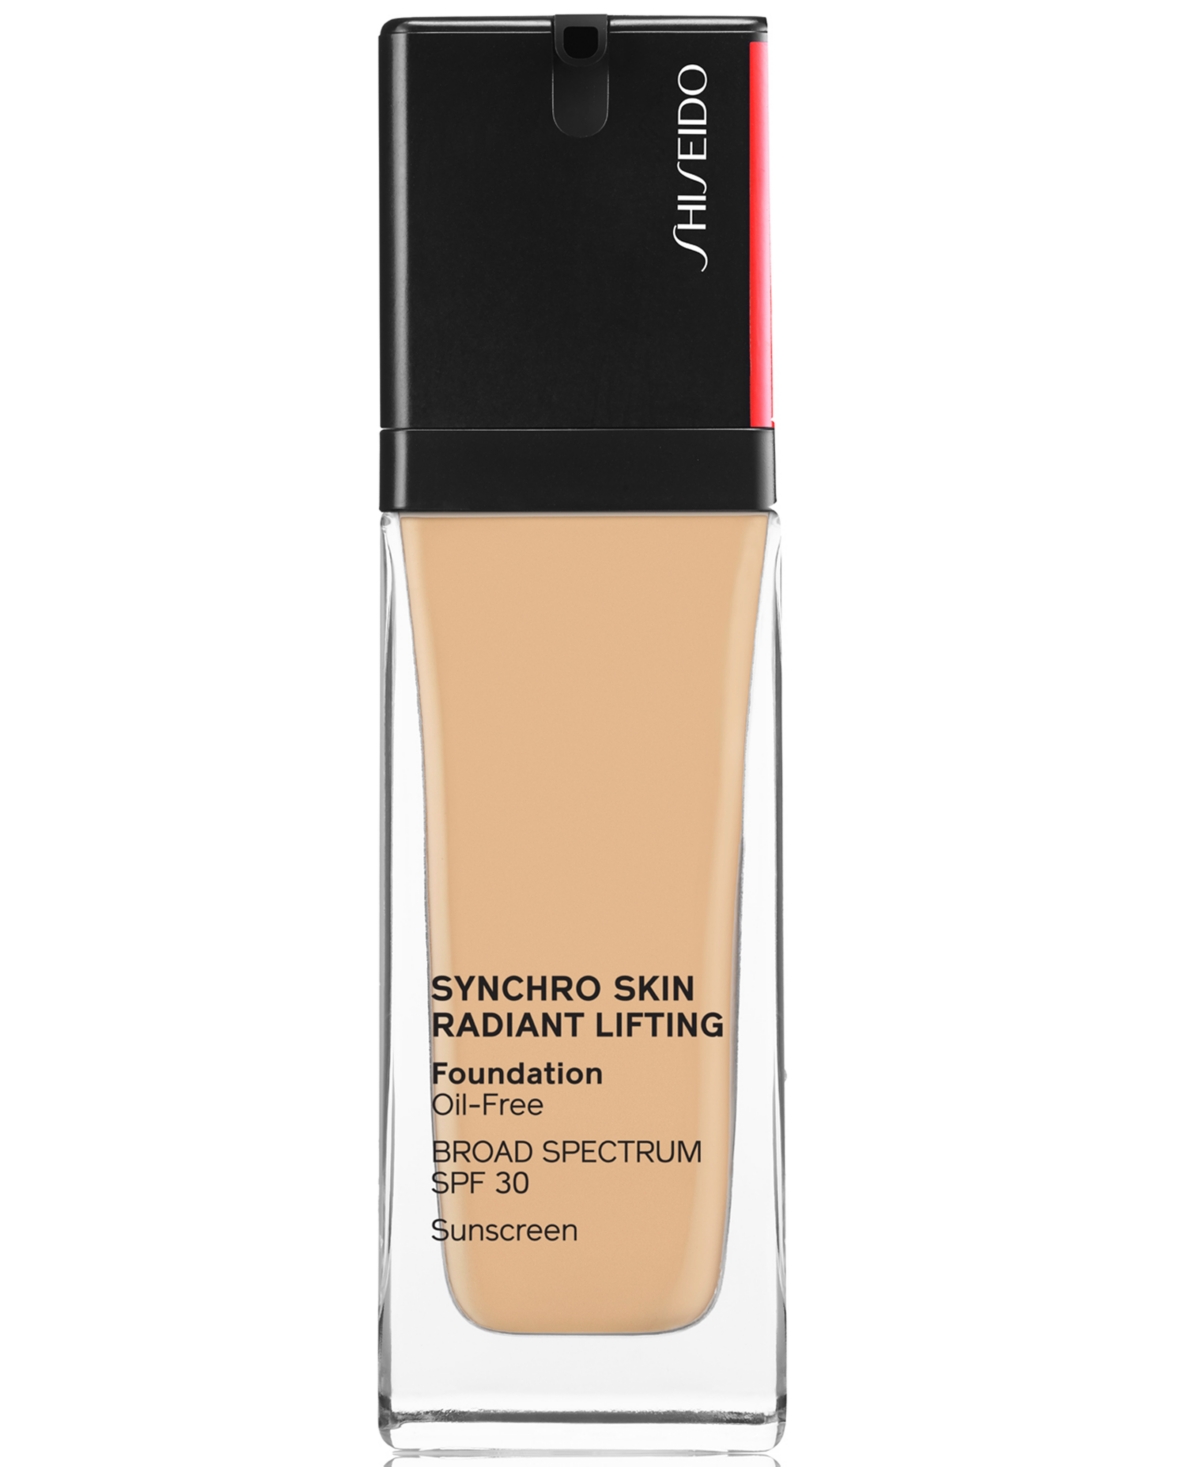 Shiseido Synchro Skin Radiant Lifting Foundation, 30 ml In Alder - Light Olive Tone For Light Skin